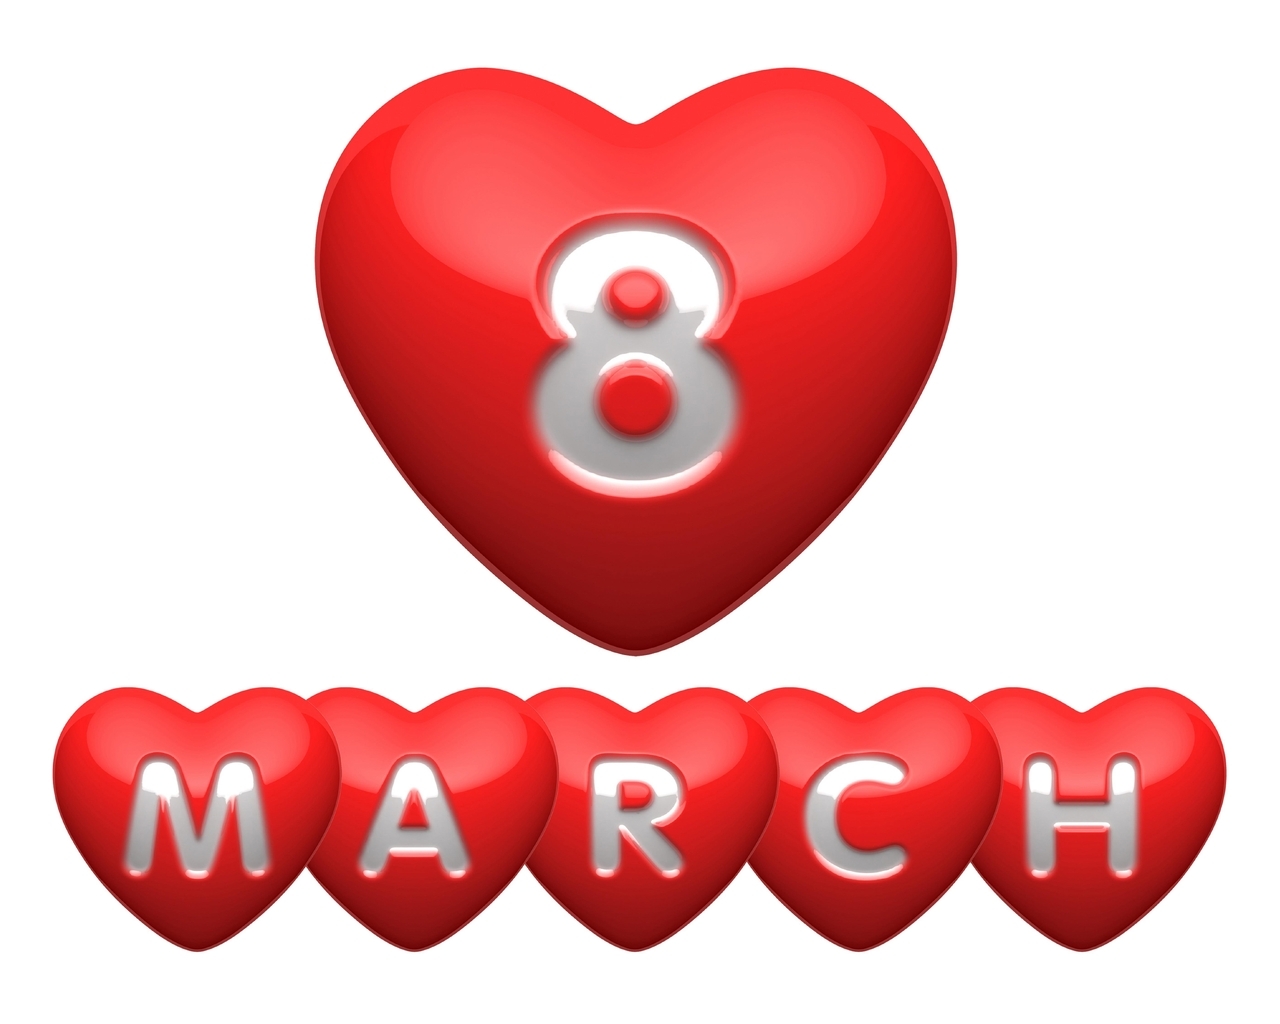 Картинка: 8 марта, праздник, Международный женский день, сердце, красное, открытка, поздравление, белый фон